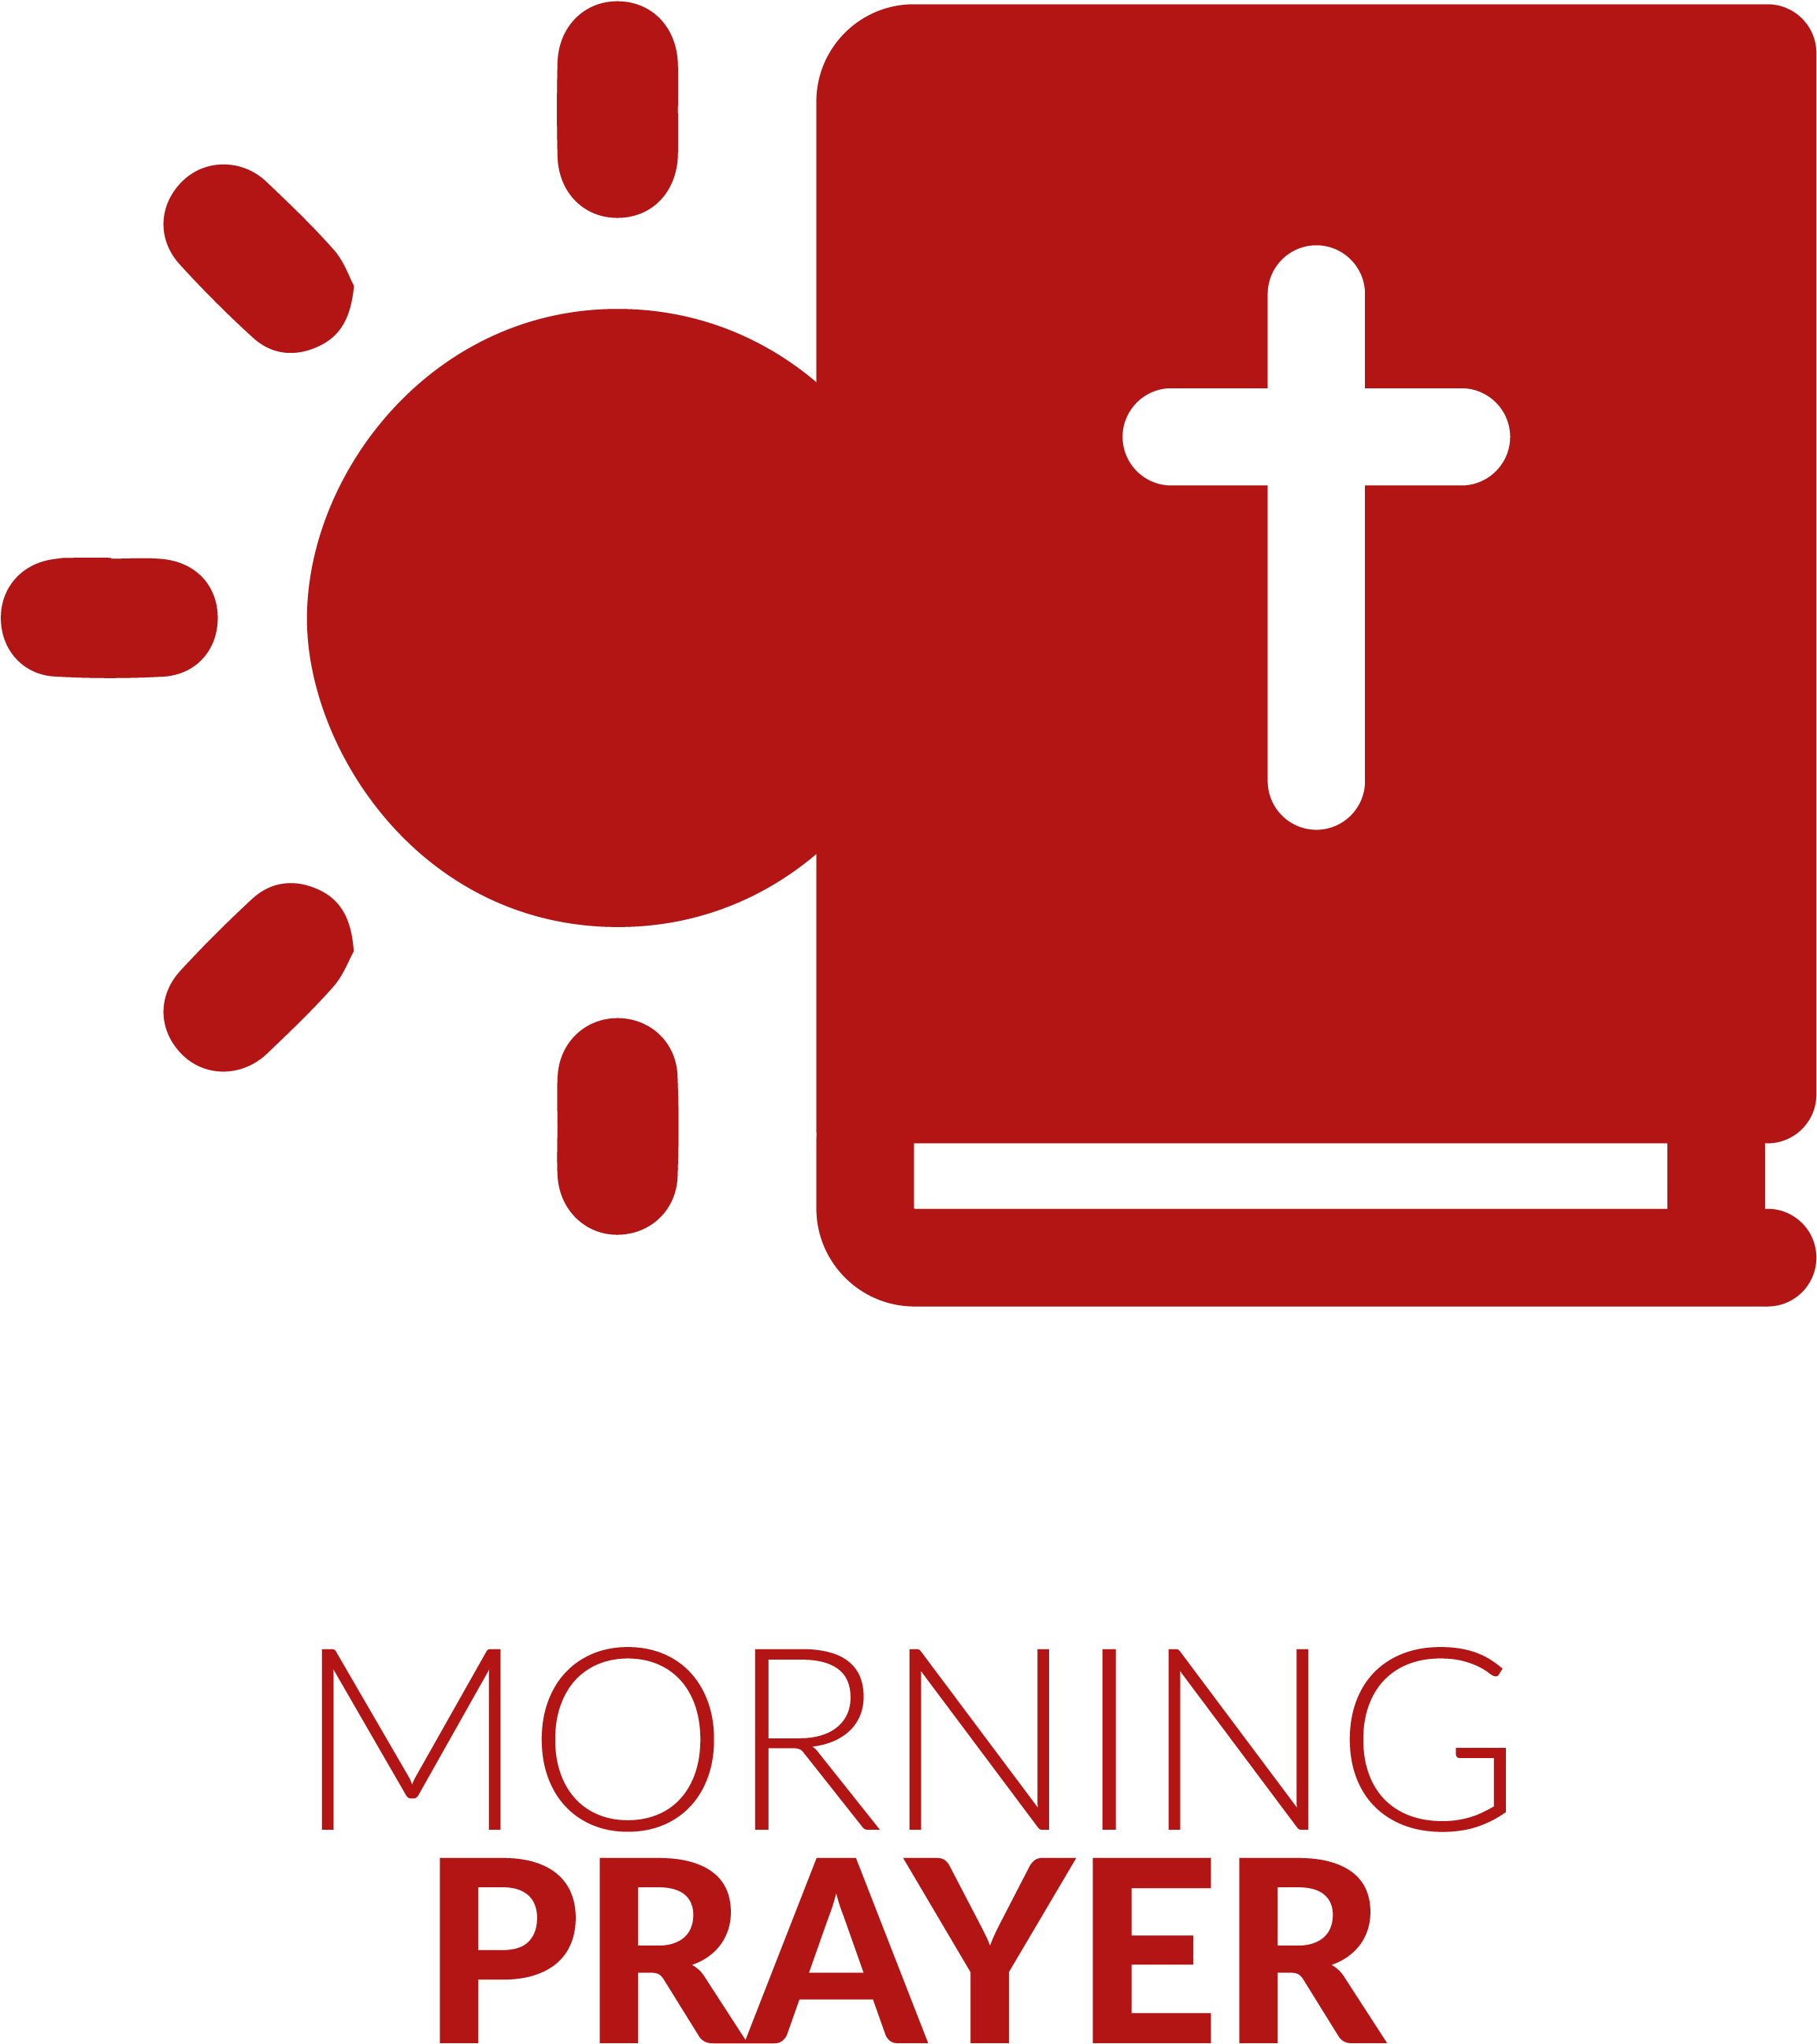 01 Morning Prayer - Bible (2597x3784), Png Download